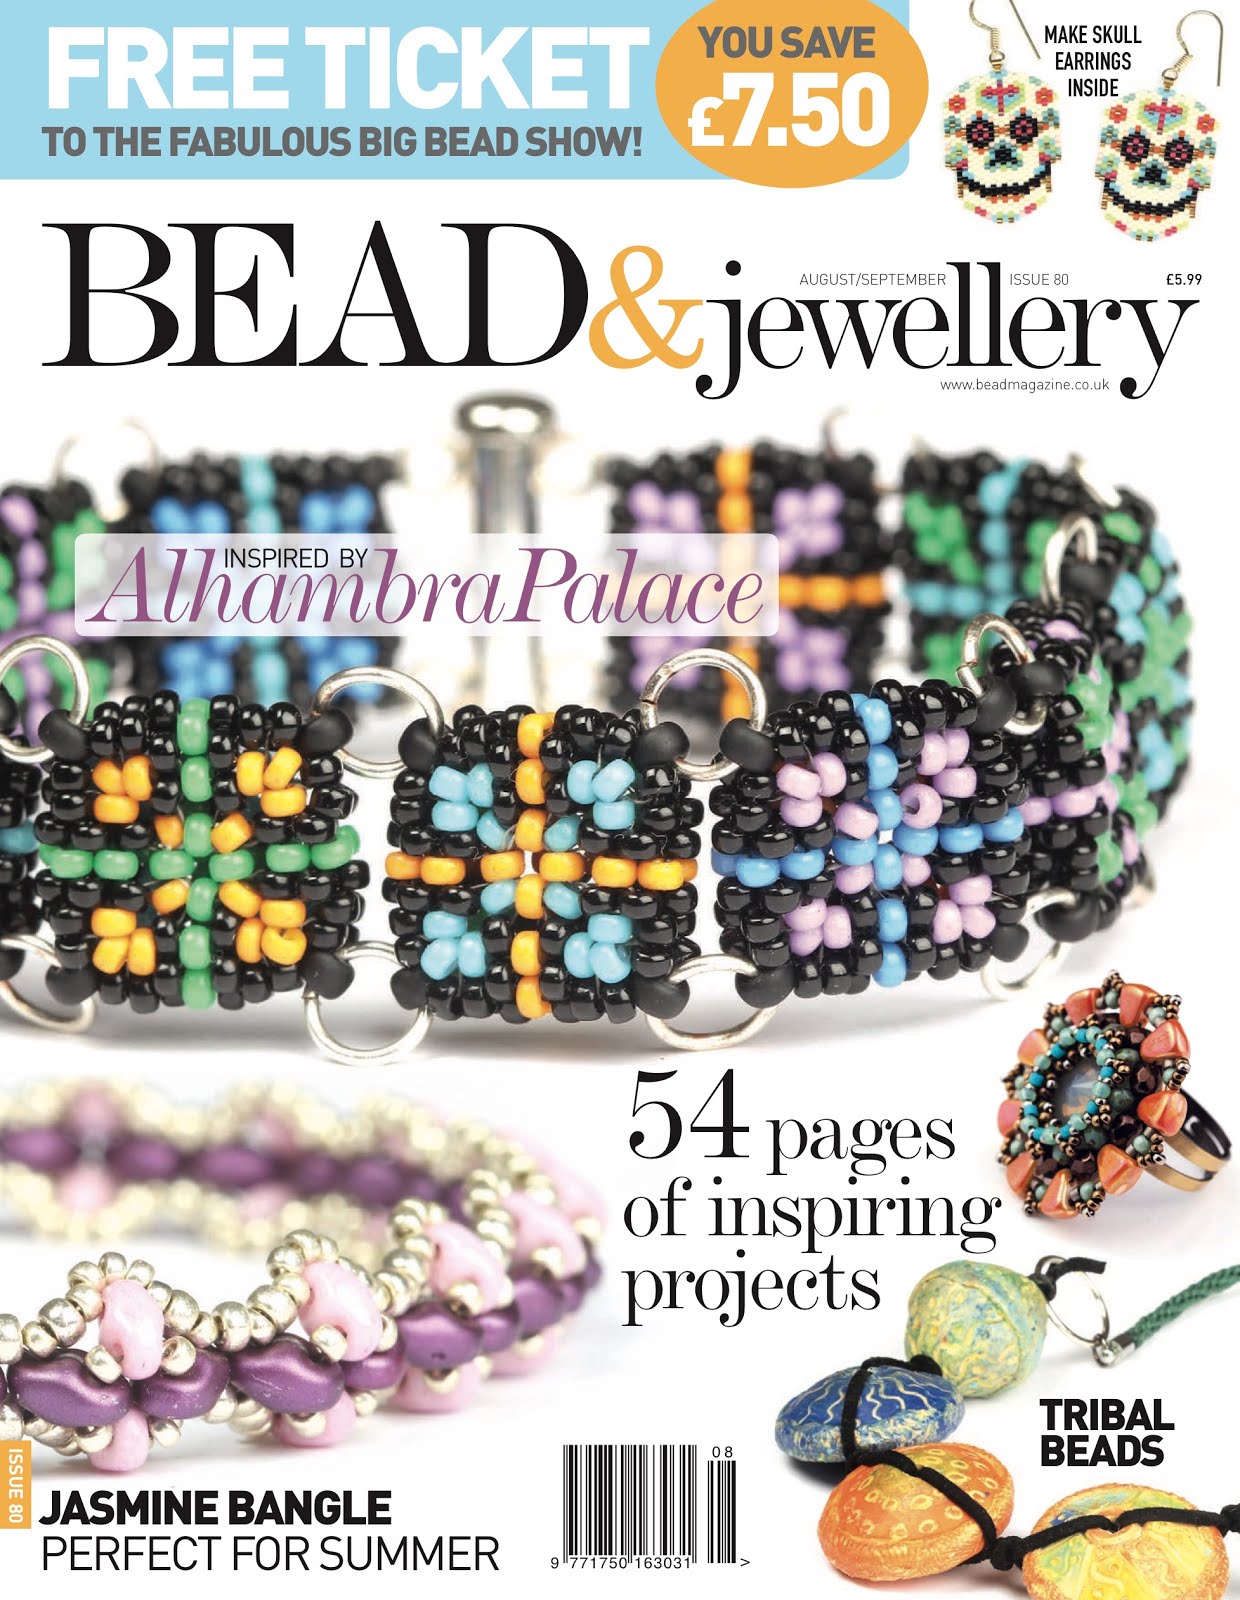 Bead & Jewellery # 80